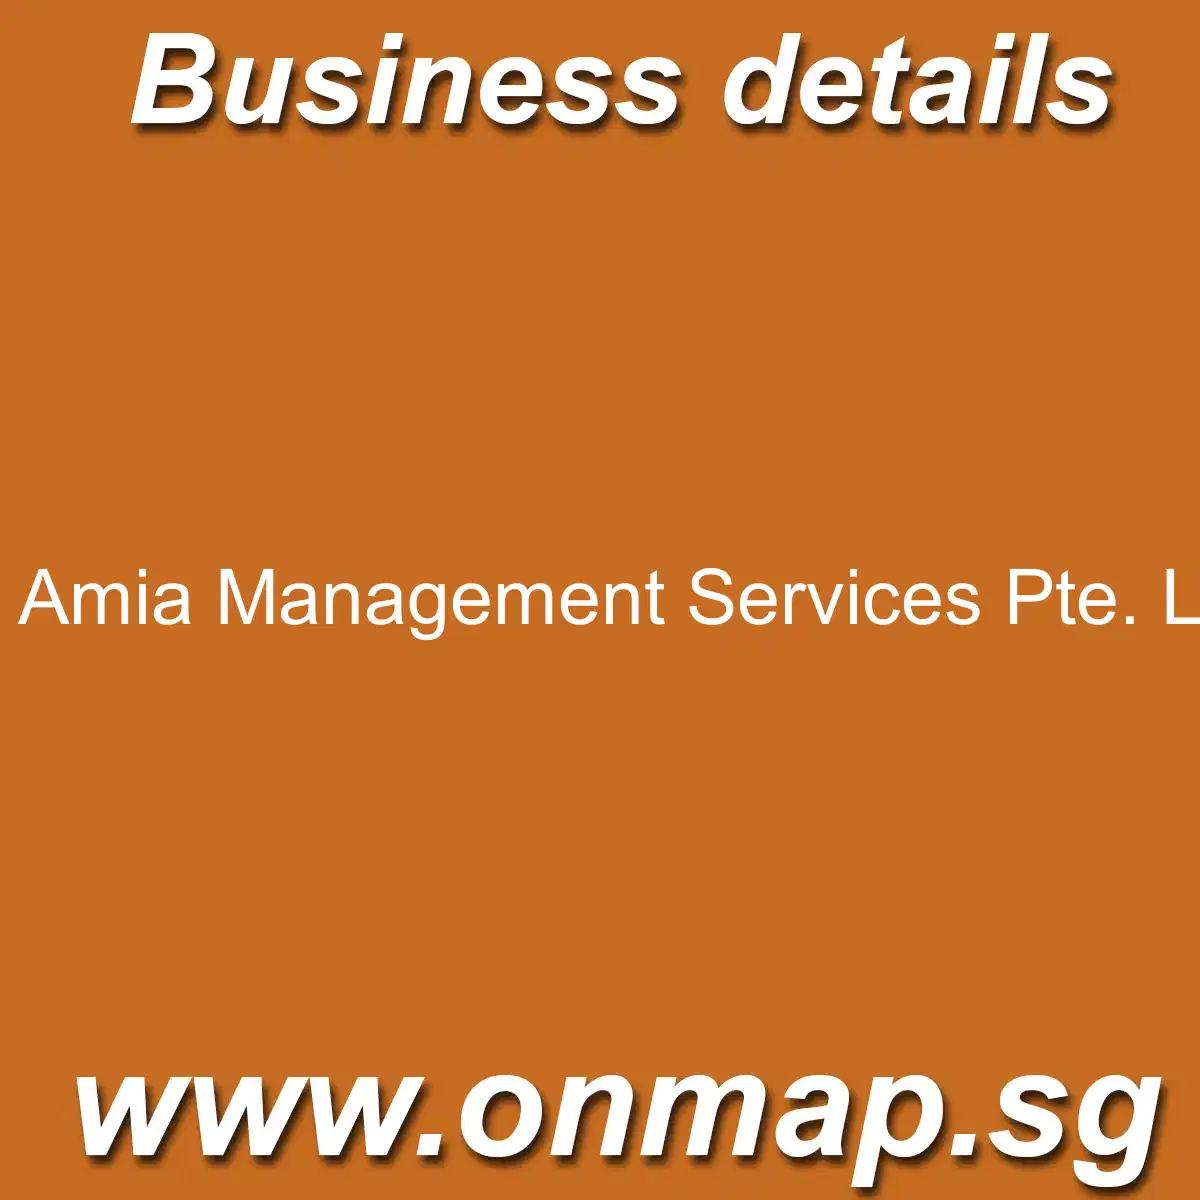 Amia Management Services Pte. Ltd. Details, Locations, Reviews